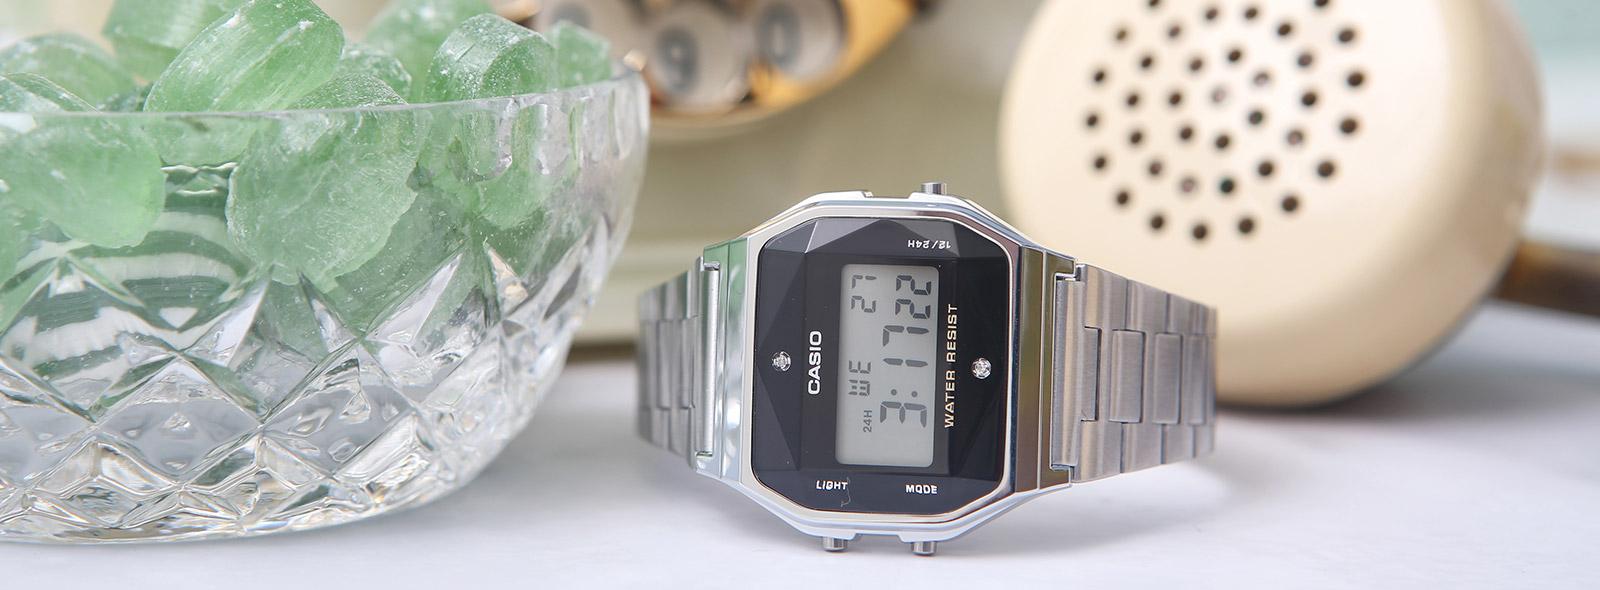 Zegarki cyfrowe w stylu retro - dla kogo? | Zegarownia.pl Blog